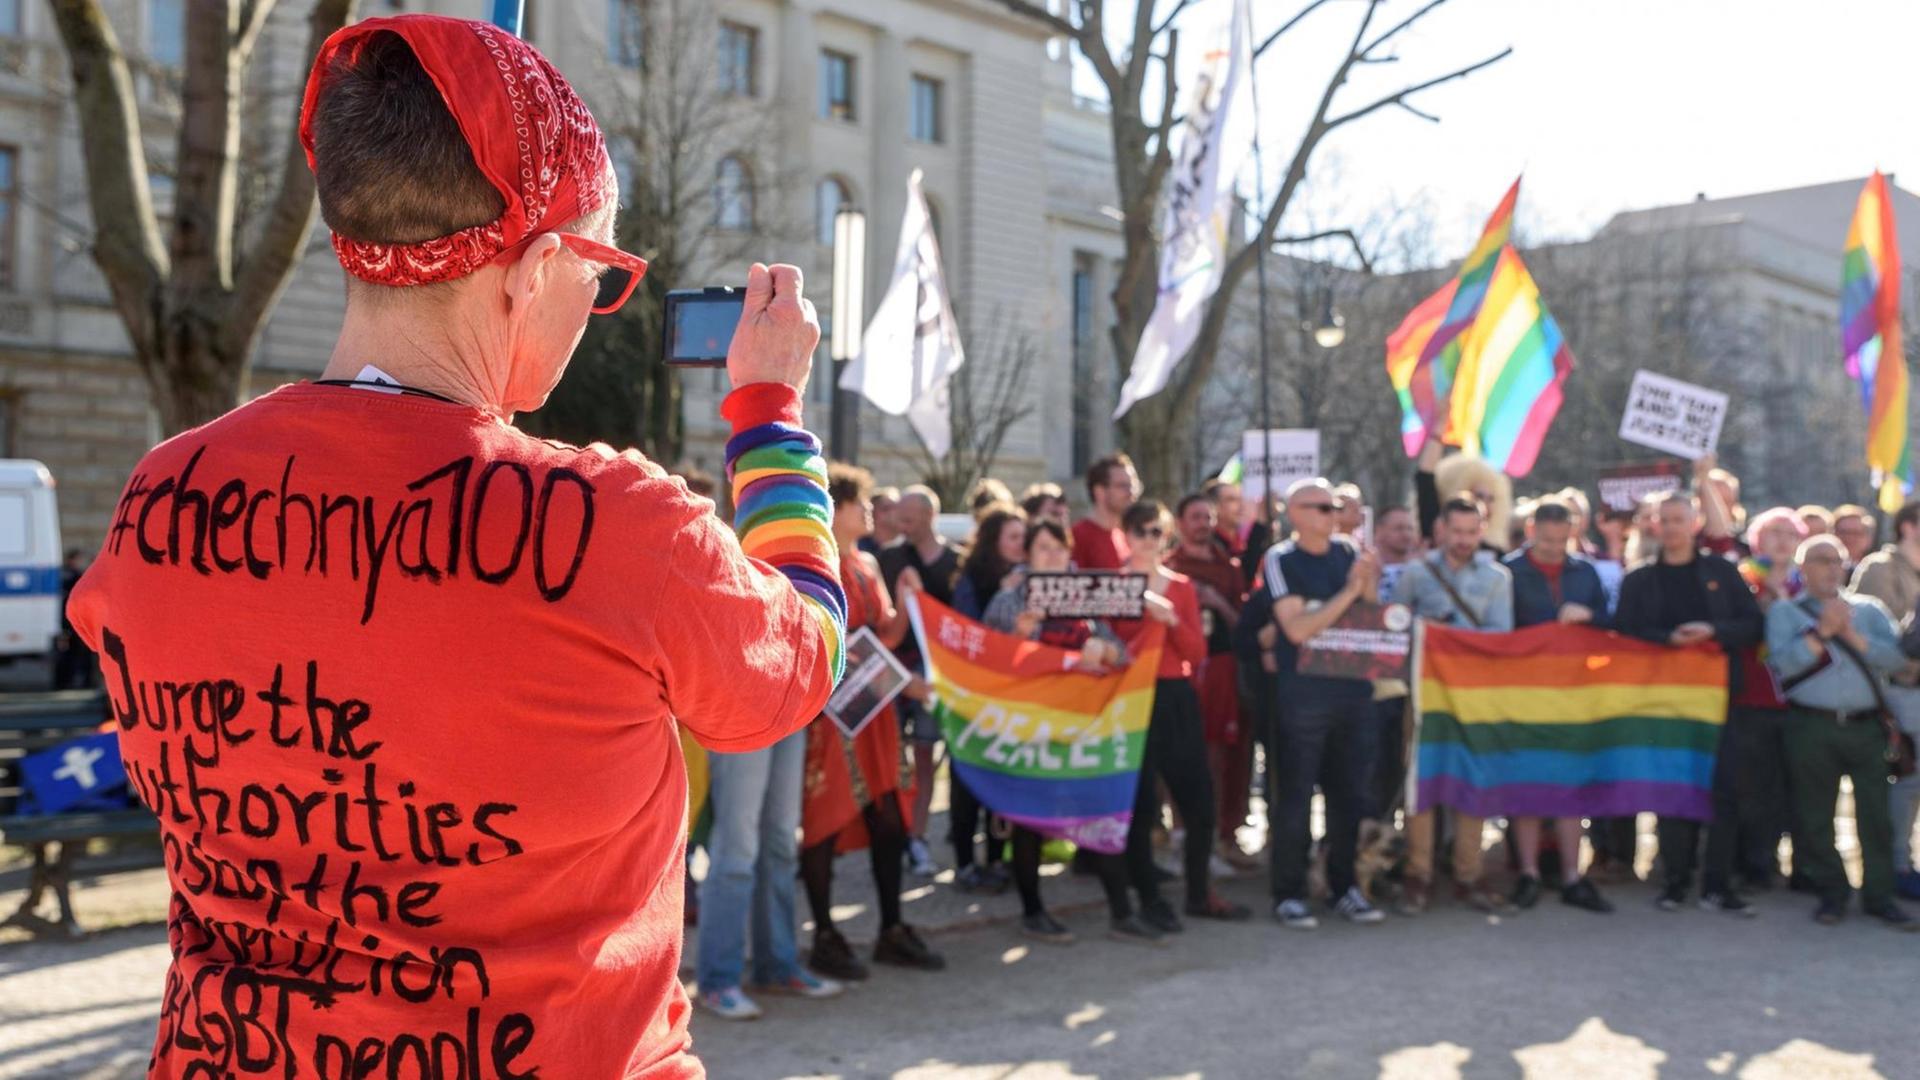 Solidaritätskundgebung mit der LGBT-Community in Tschetschenien vor der Russischen Botschaft in Berlin.